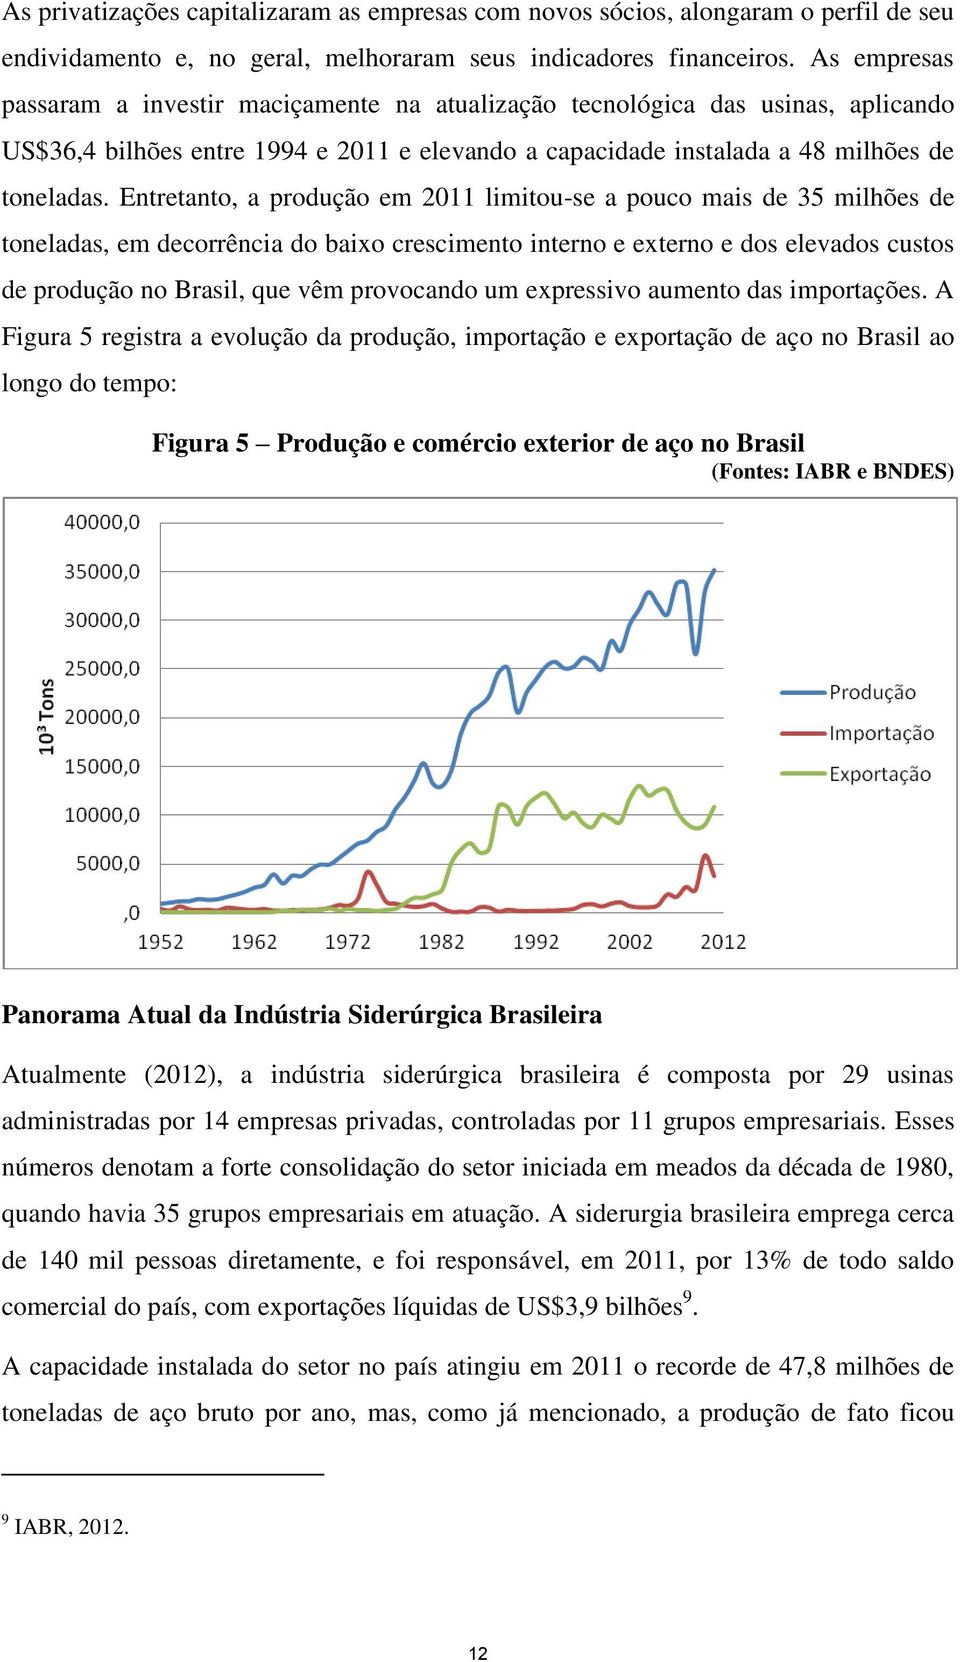 Entretanto, a produção em 2011 limitou-se a pouco mais de 35 milhões de toneladas, em decorrência do baixo crescimento interno e externo e dos elevados custos de produção no Brasil, que vêm